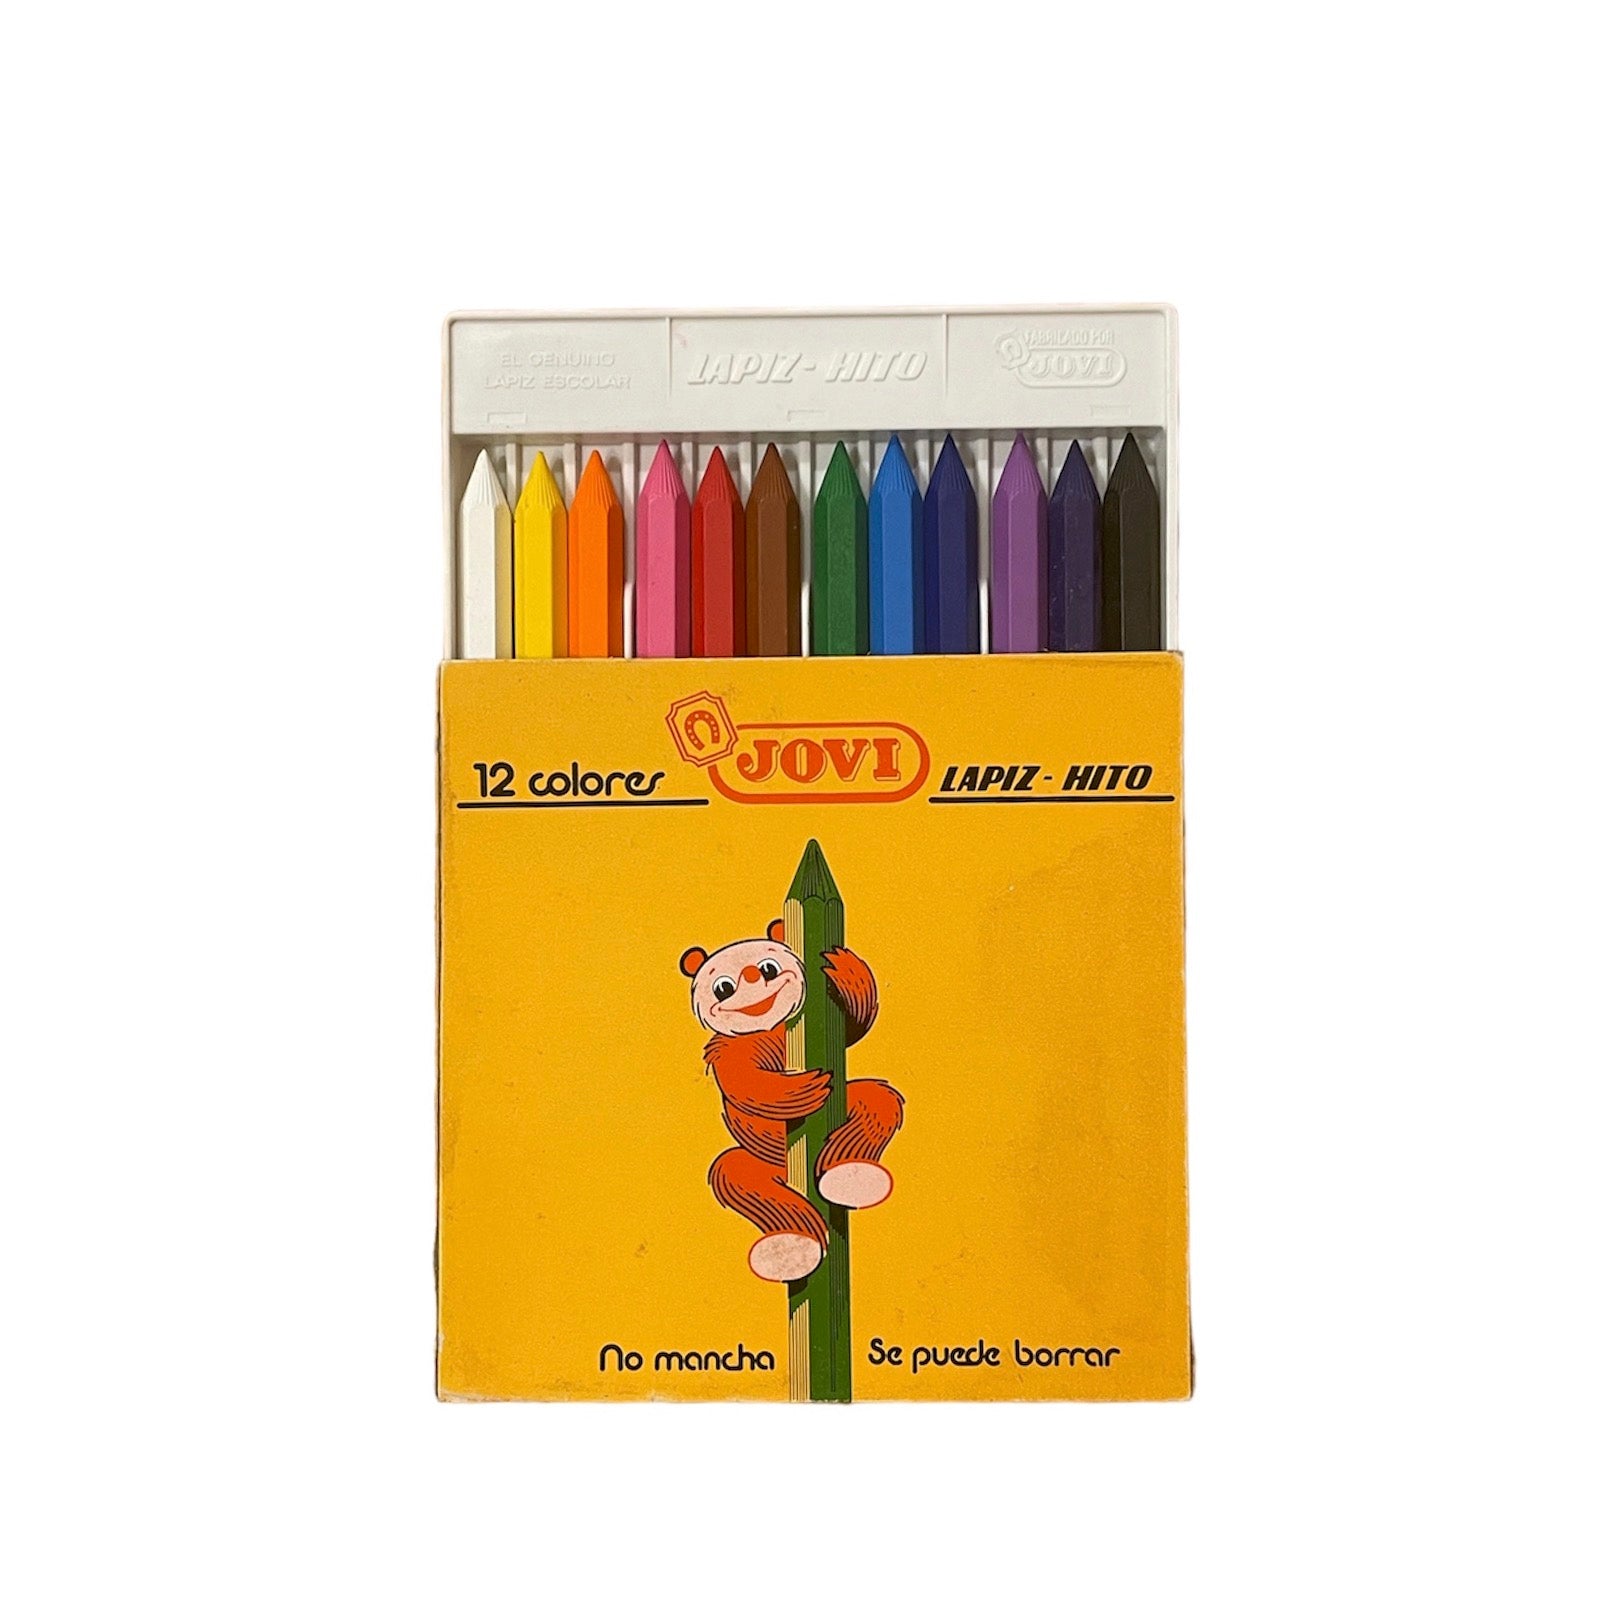 Pencil-Hito Jovi 